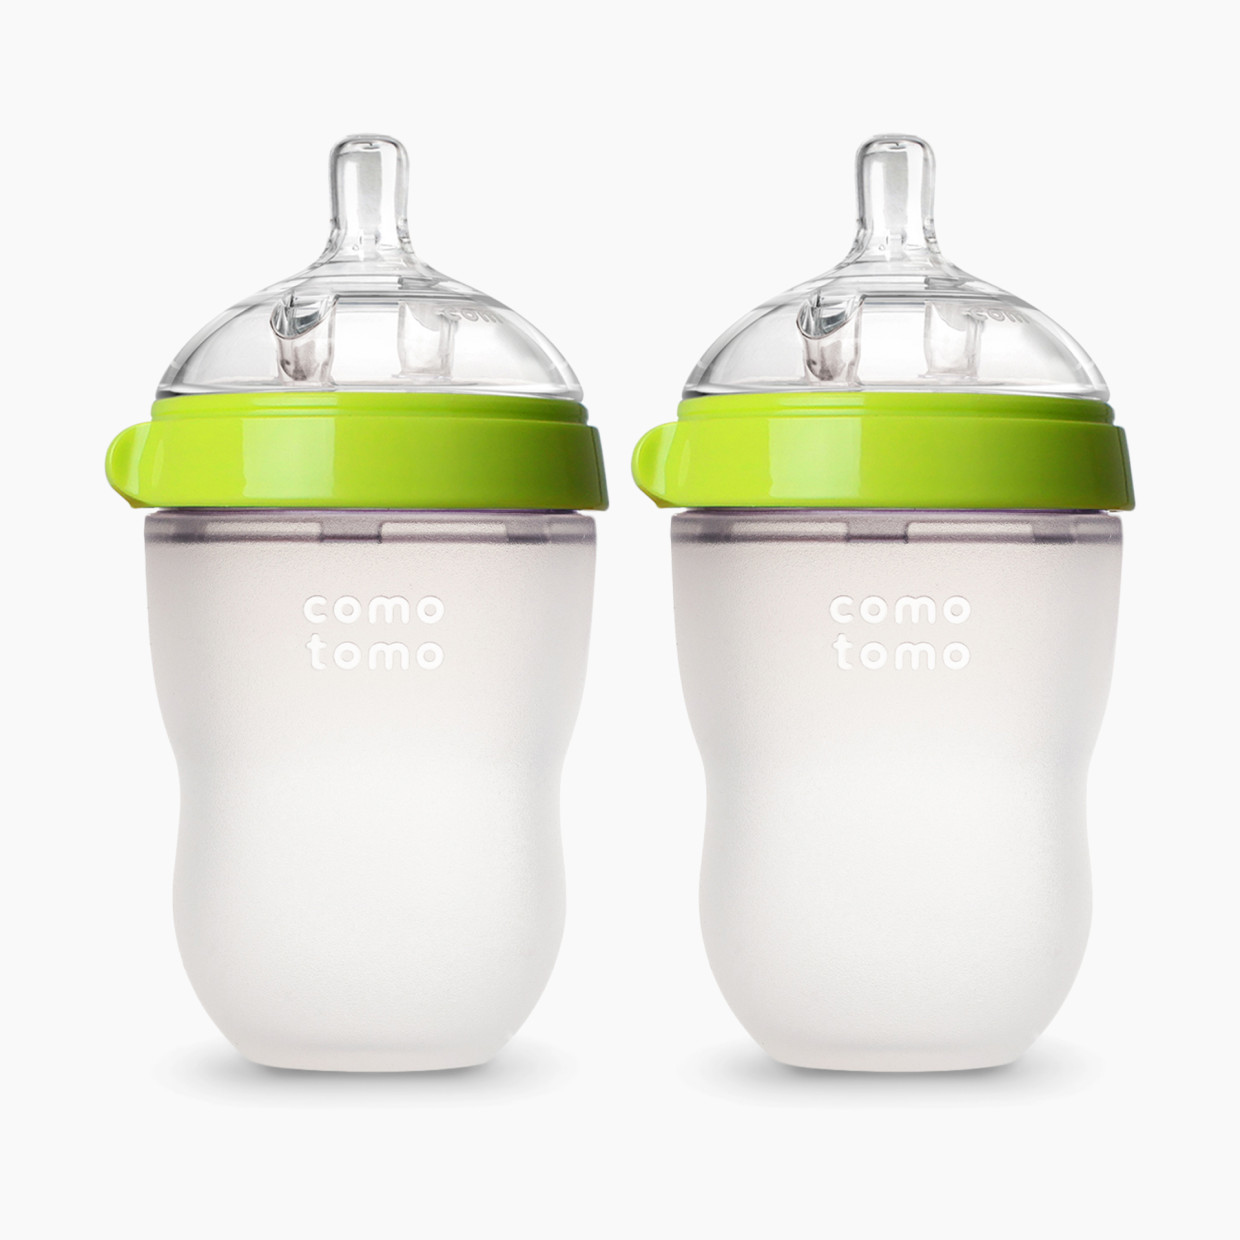 Comotomo Natural Feel Silicone Baby Bottles - Green, 8 Oz, 2.